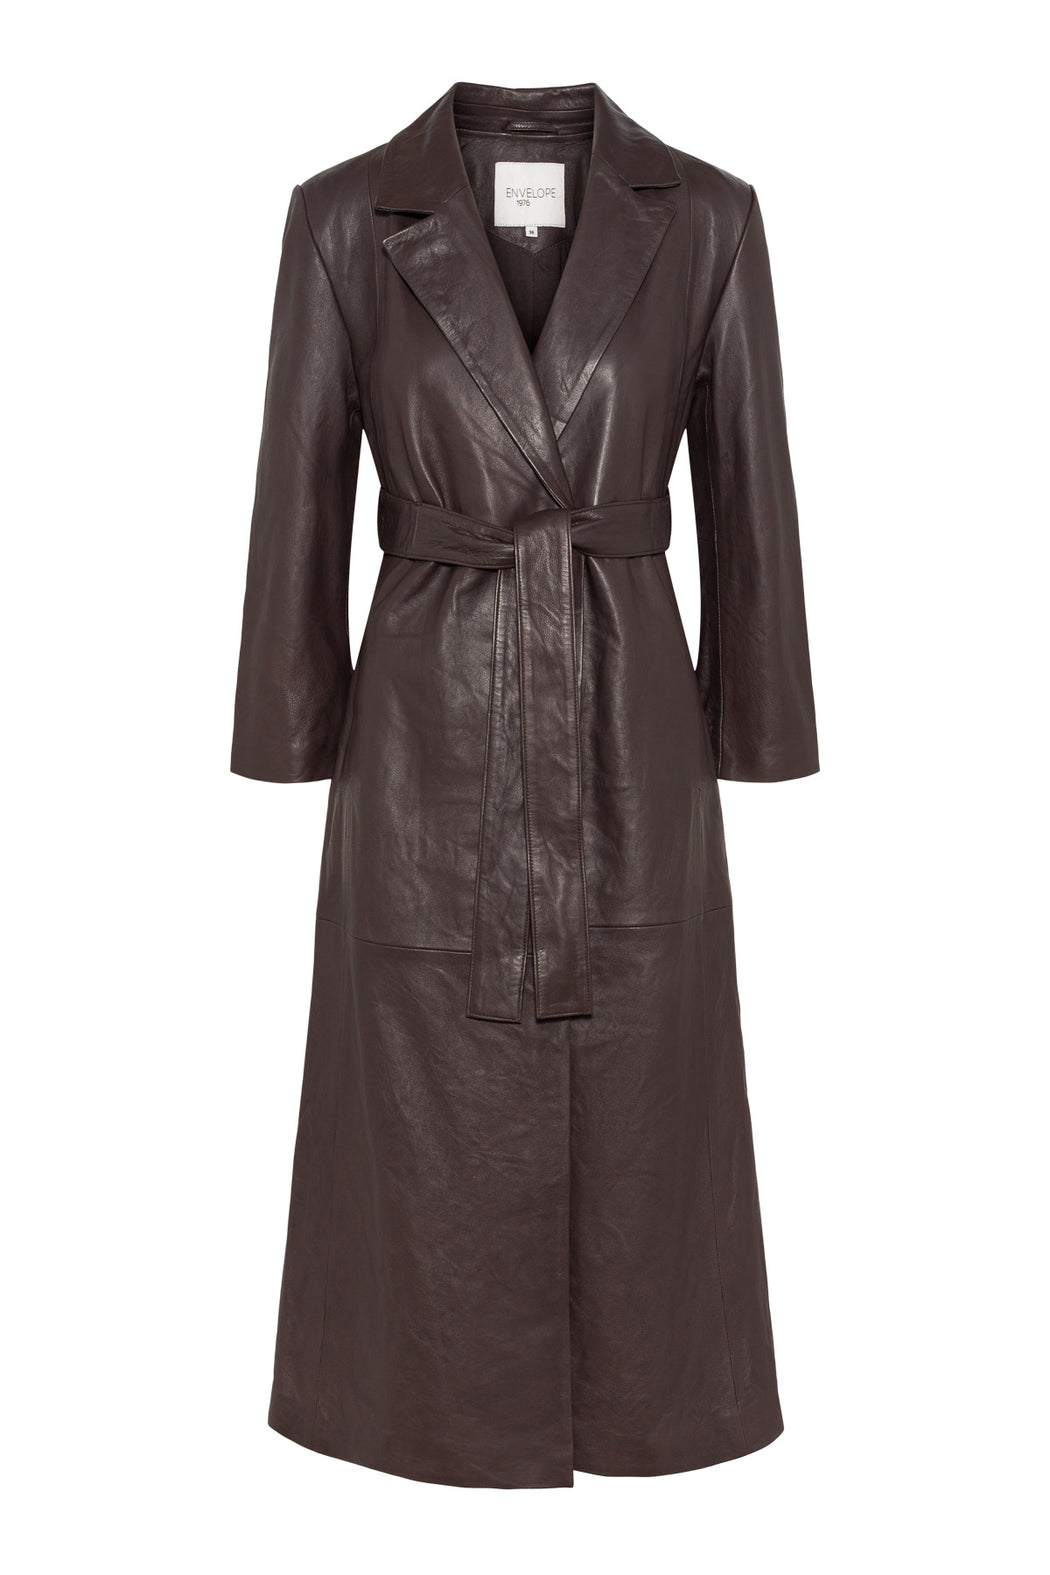 Envelope1976 Perpignan coat - Leather Coat Aubergine